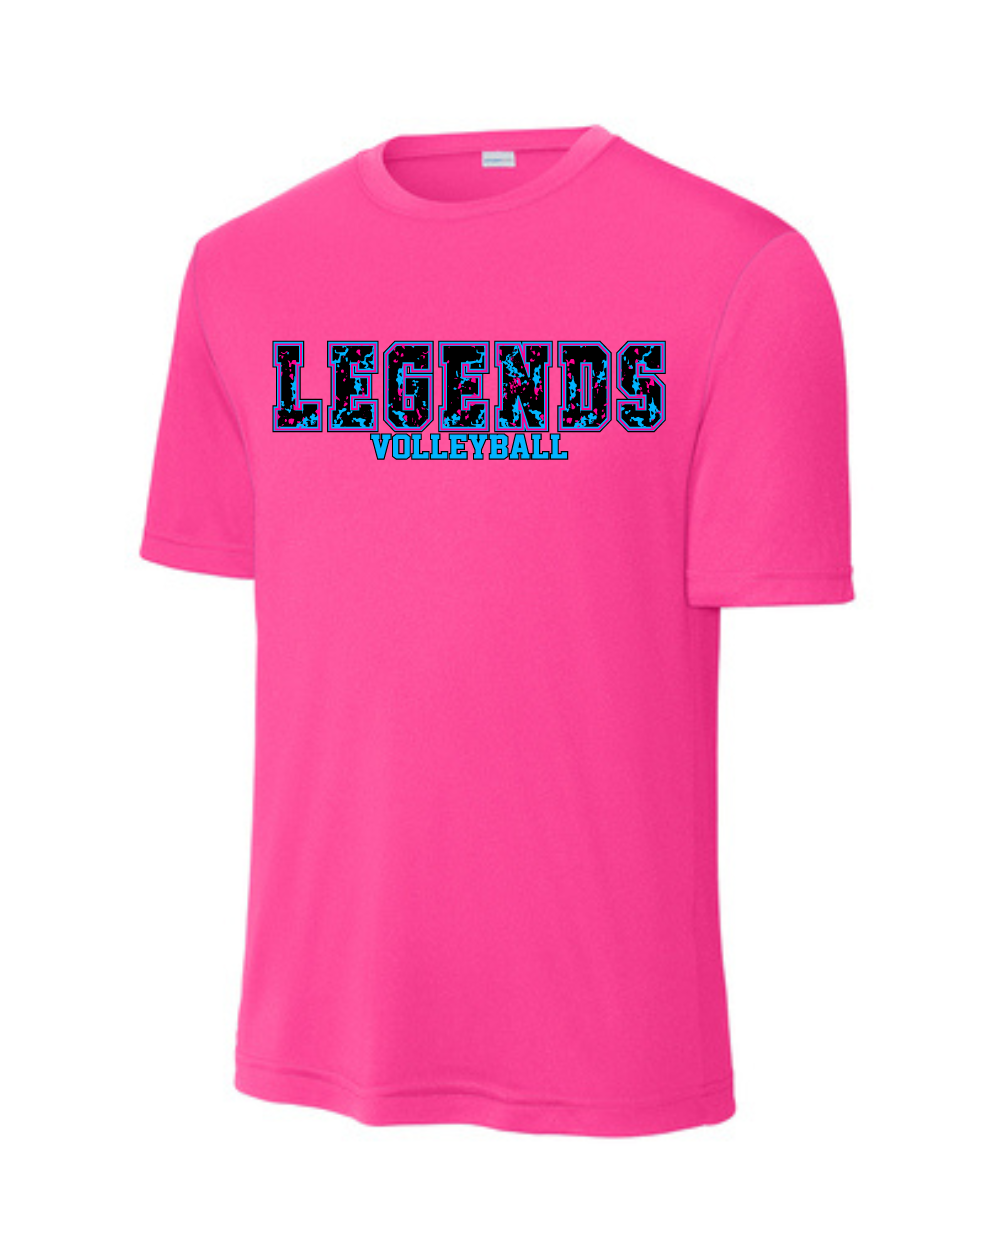 BSA-Legends Volleyball Performance Tee-Pink